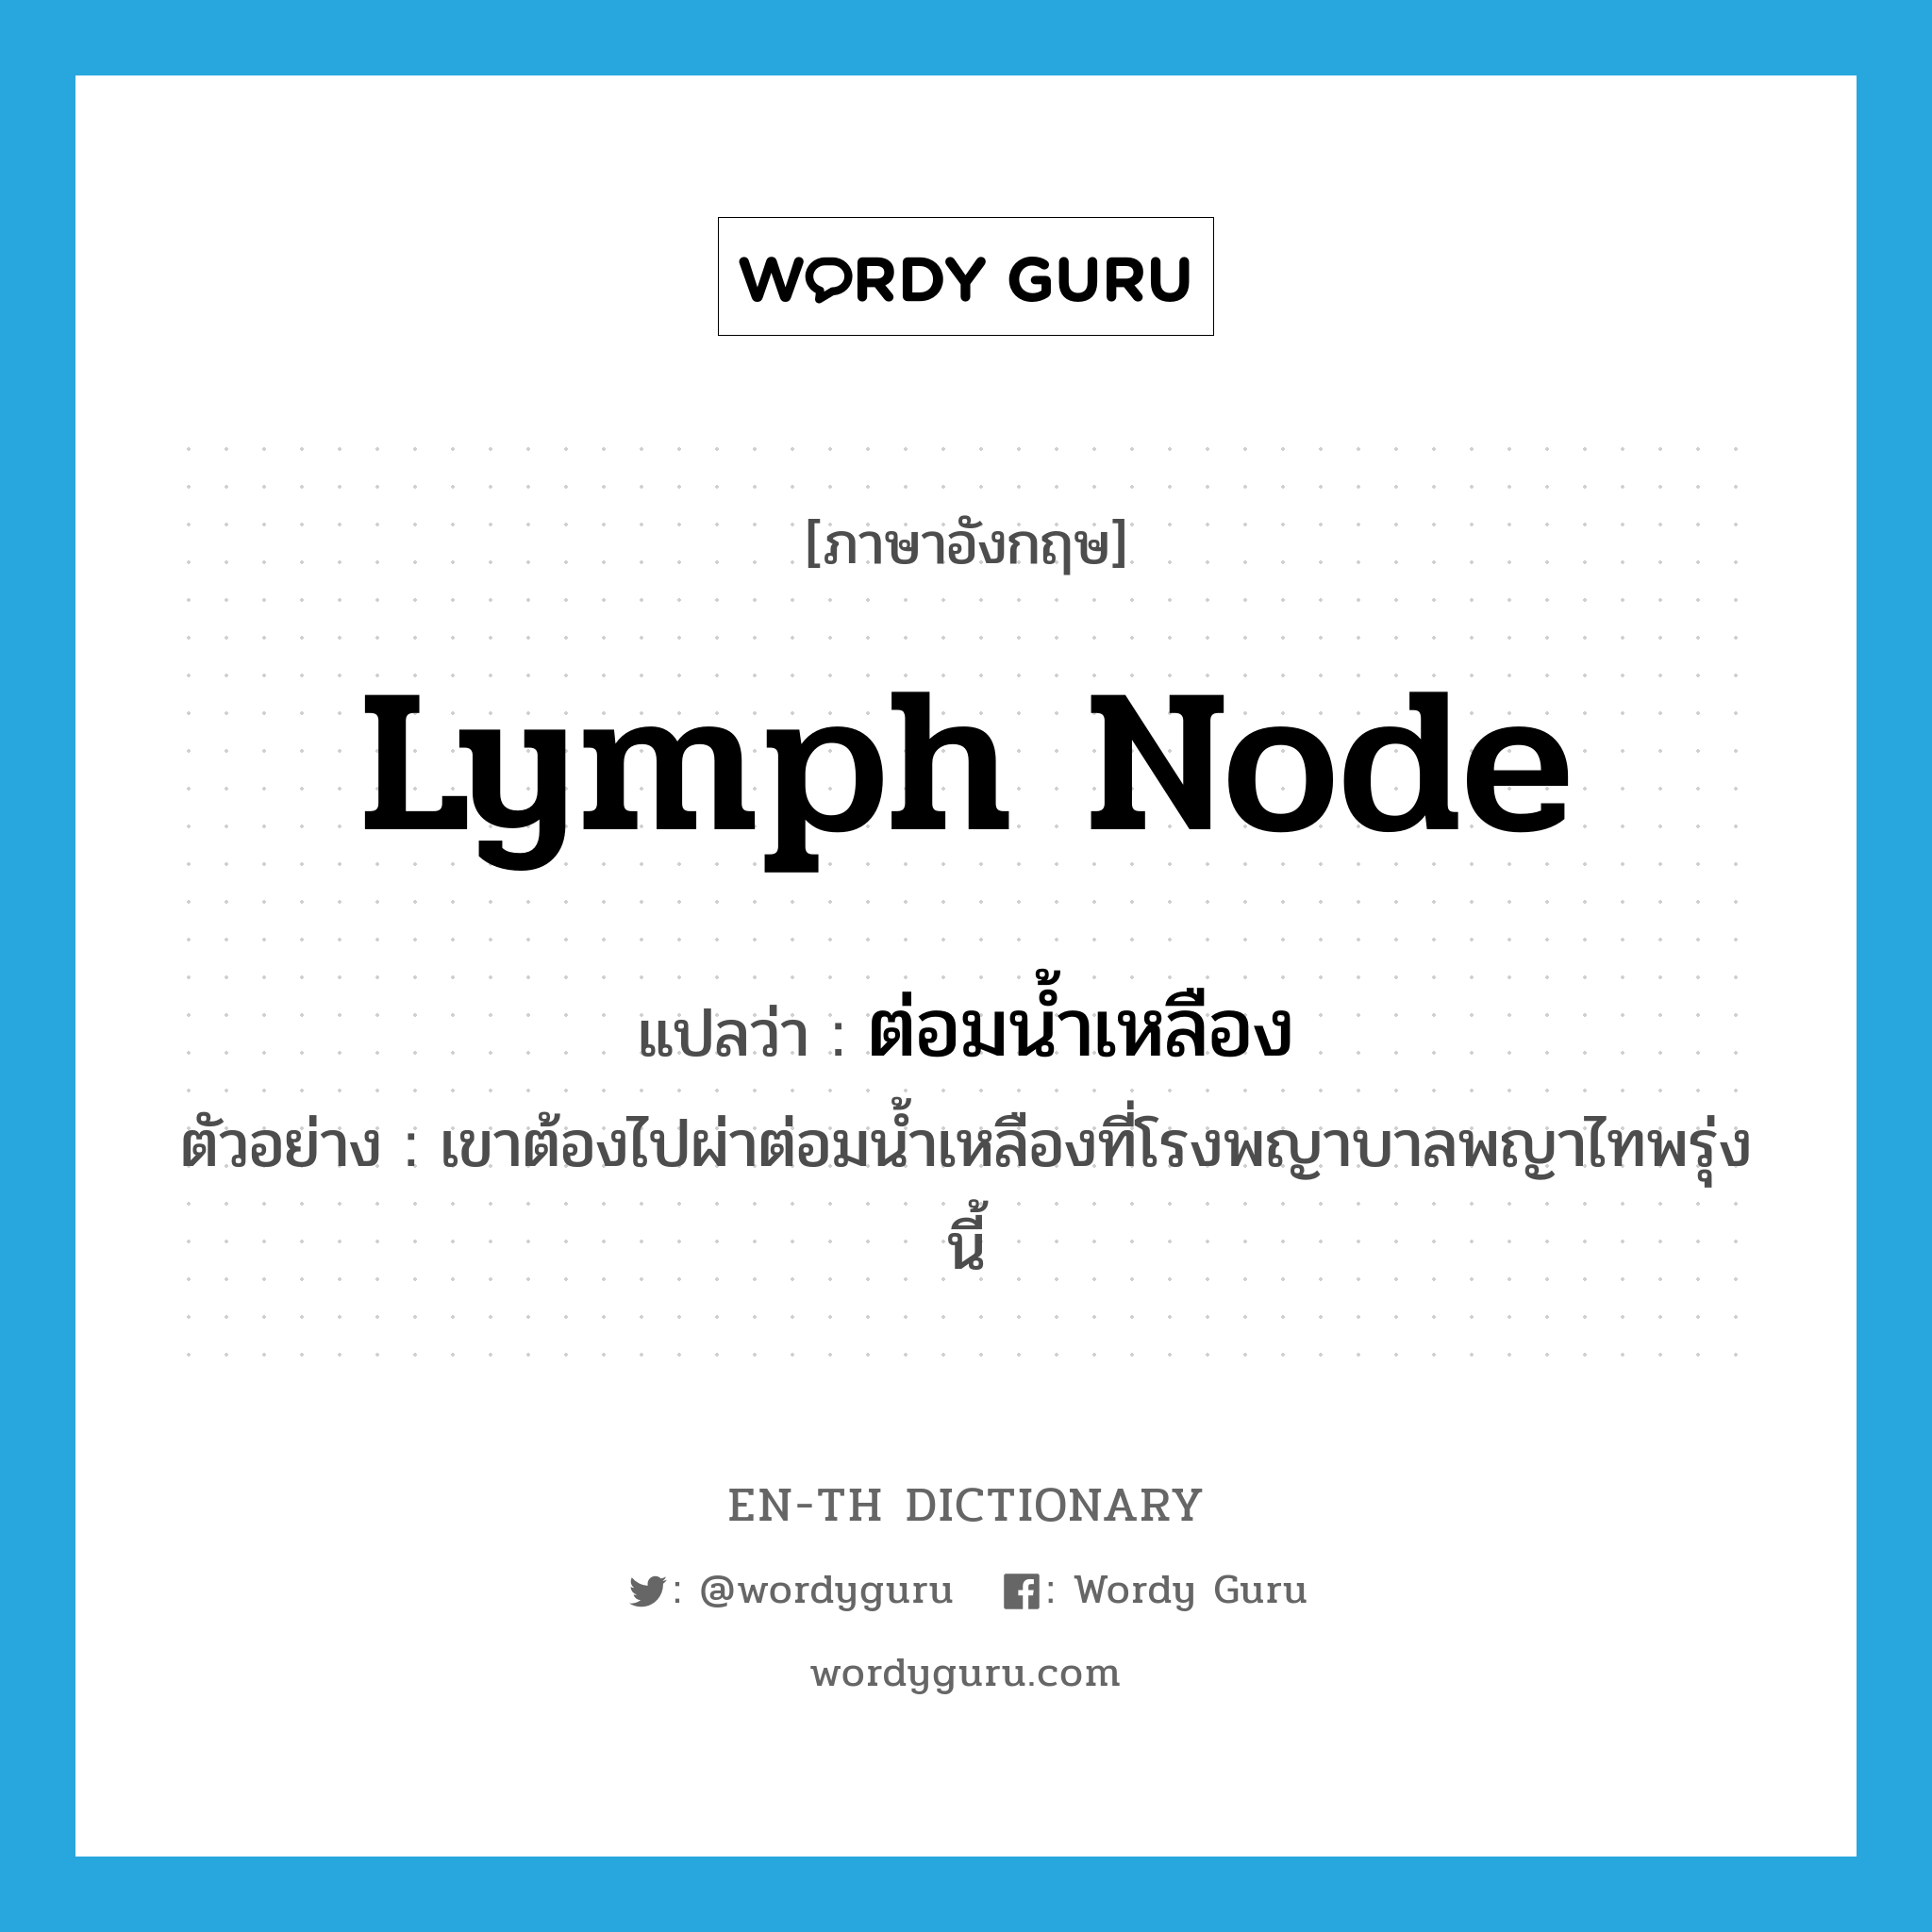 lymph node แปลว่า?, คำศัพท์ภาษาอังกฤษ lymph node แปลว่า ต่อมน้ำเหลือง ประเภท N ตัวอย่าง เขาต้องไปผ่าต่อมน้ำเหลืองที่โรงพญาบาลพญาไทพรุ่งนี้ หมวด N